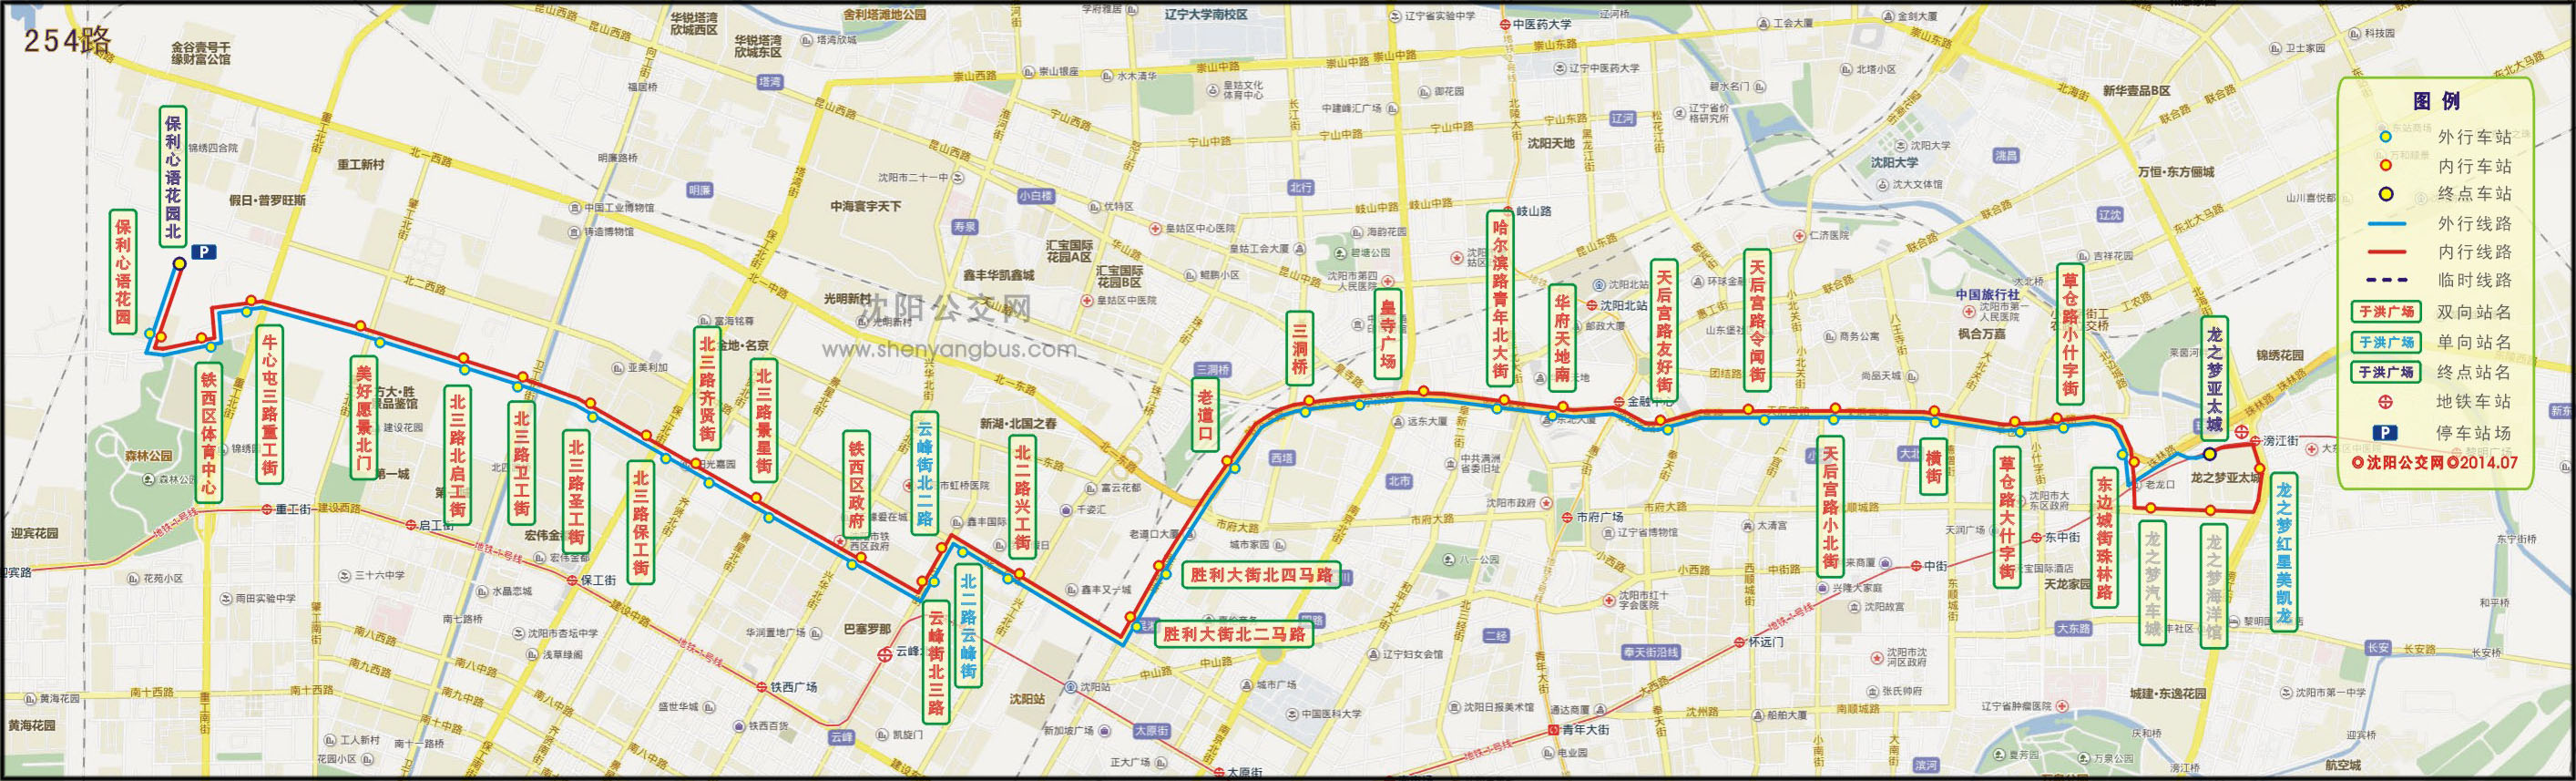 沈阳公交254路:线路站位,线路走向,现役车型,线路历史